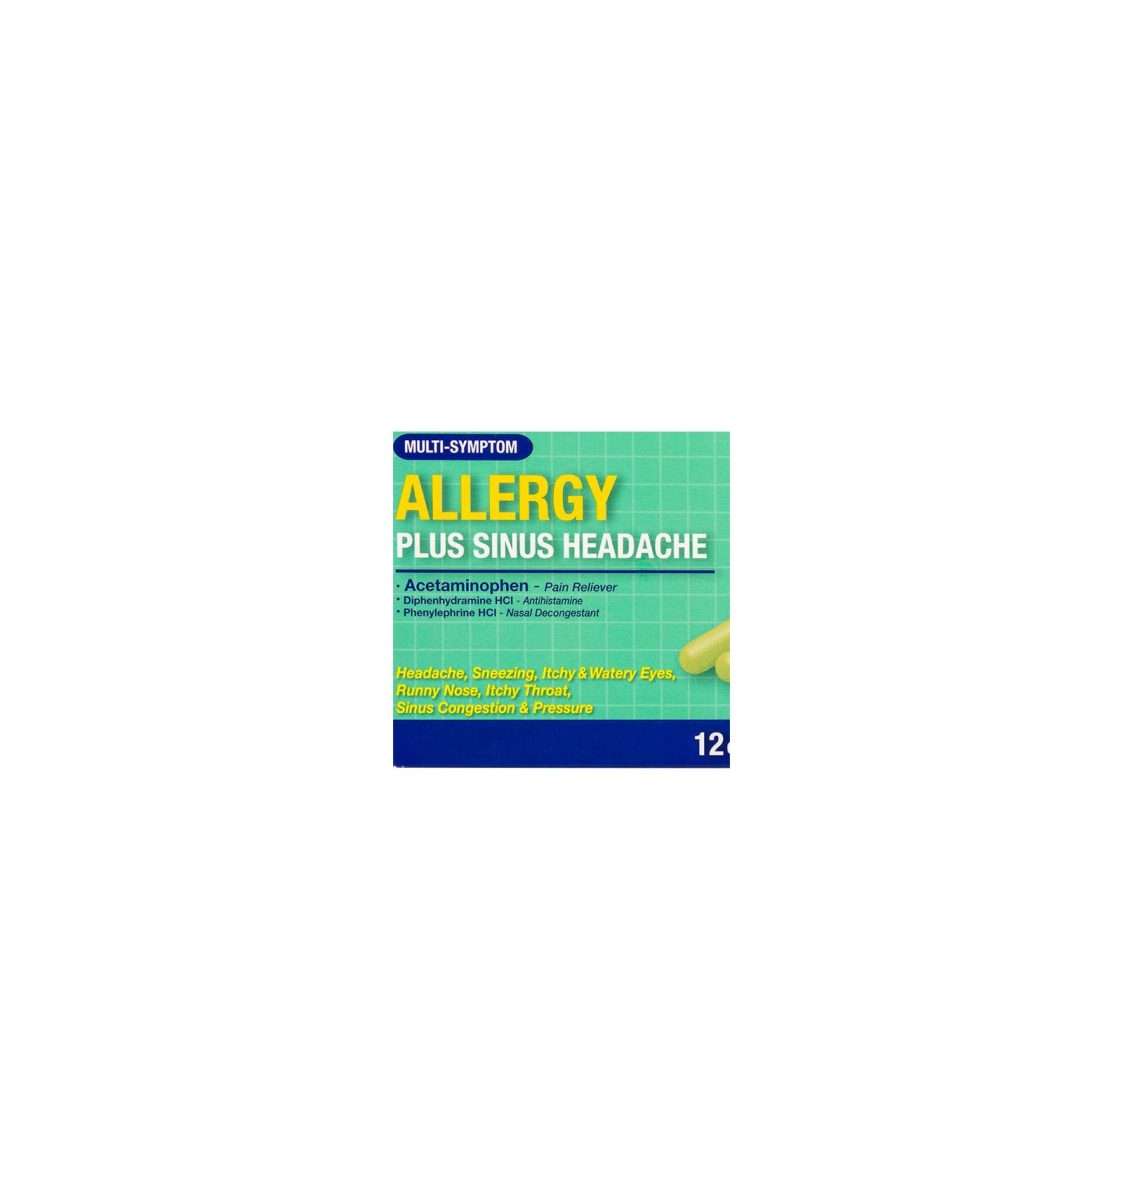 Assured Allergy Plus Sinus Headache Capsules, 12